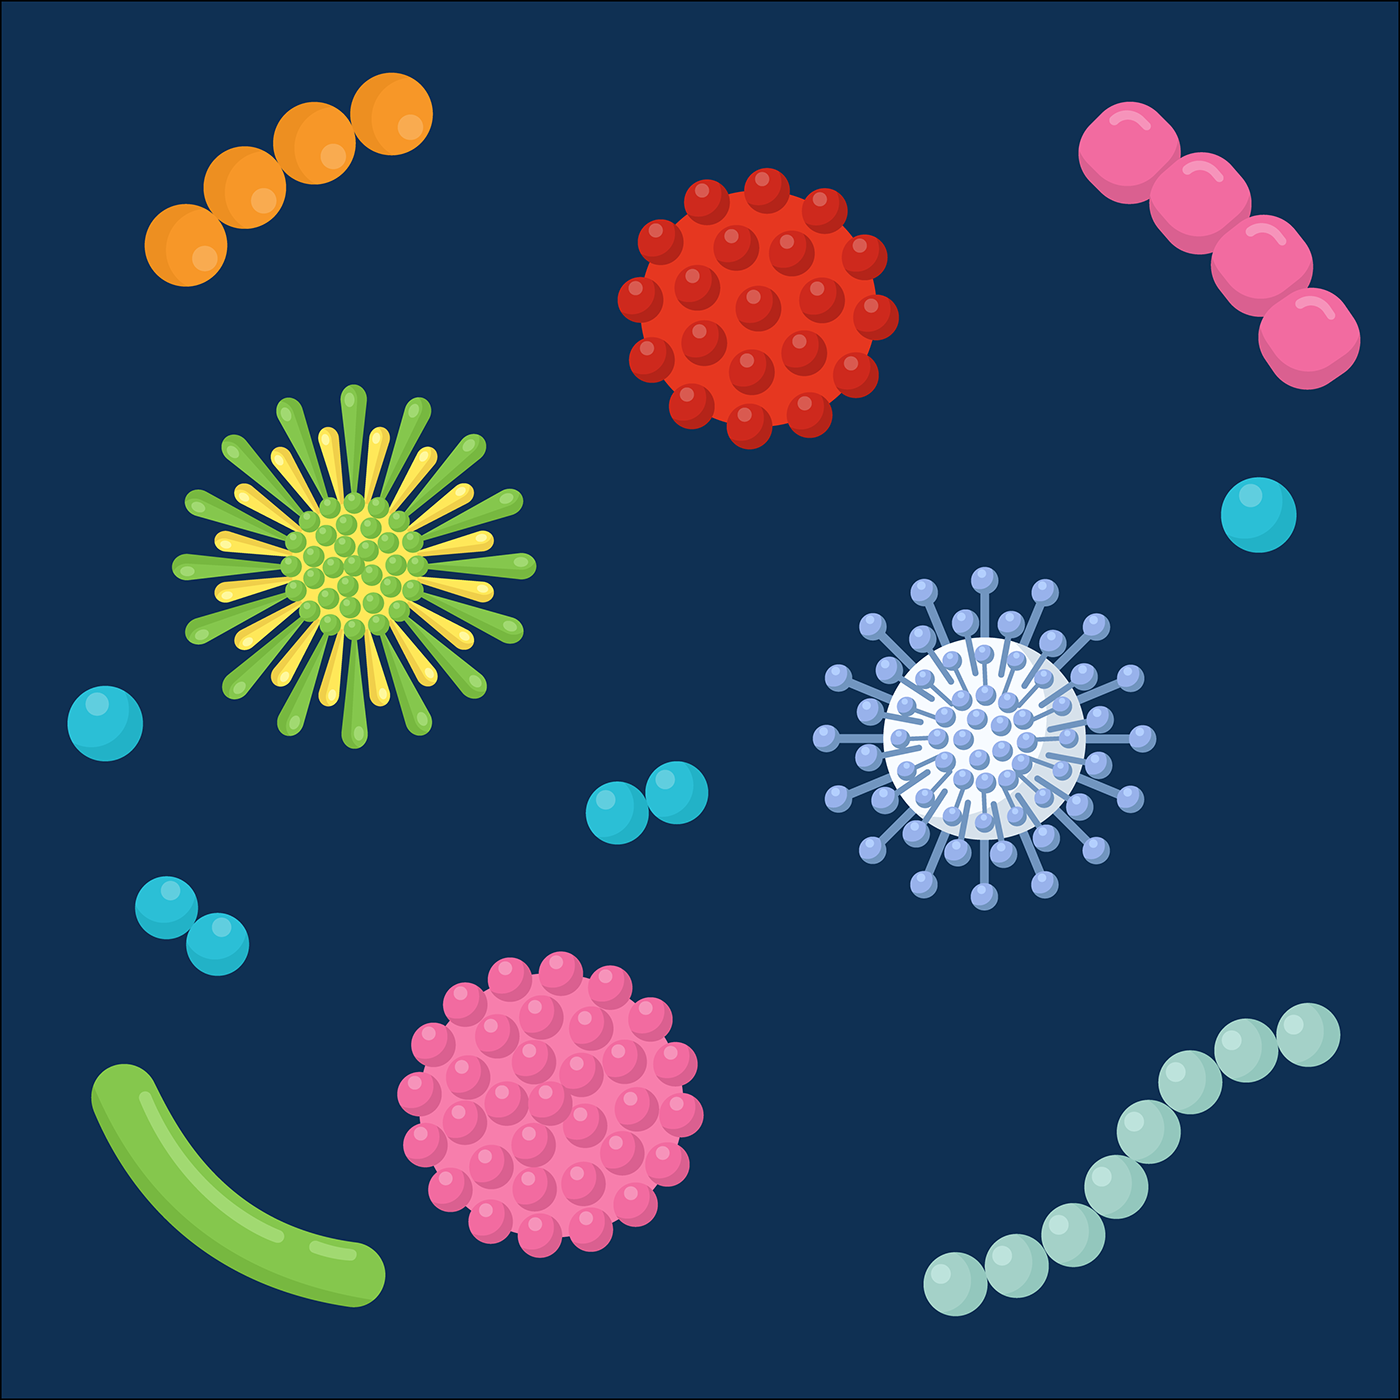 Bacteria biology coccus medicine microbe microbiology microorganism virus